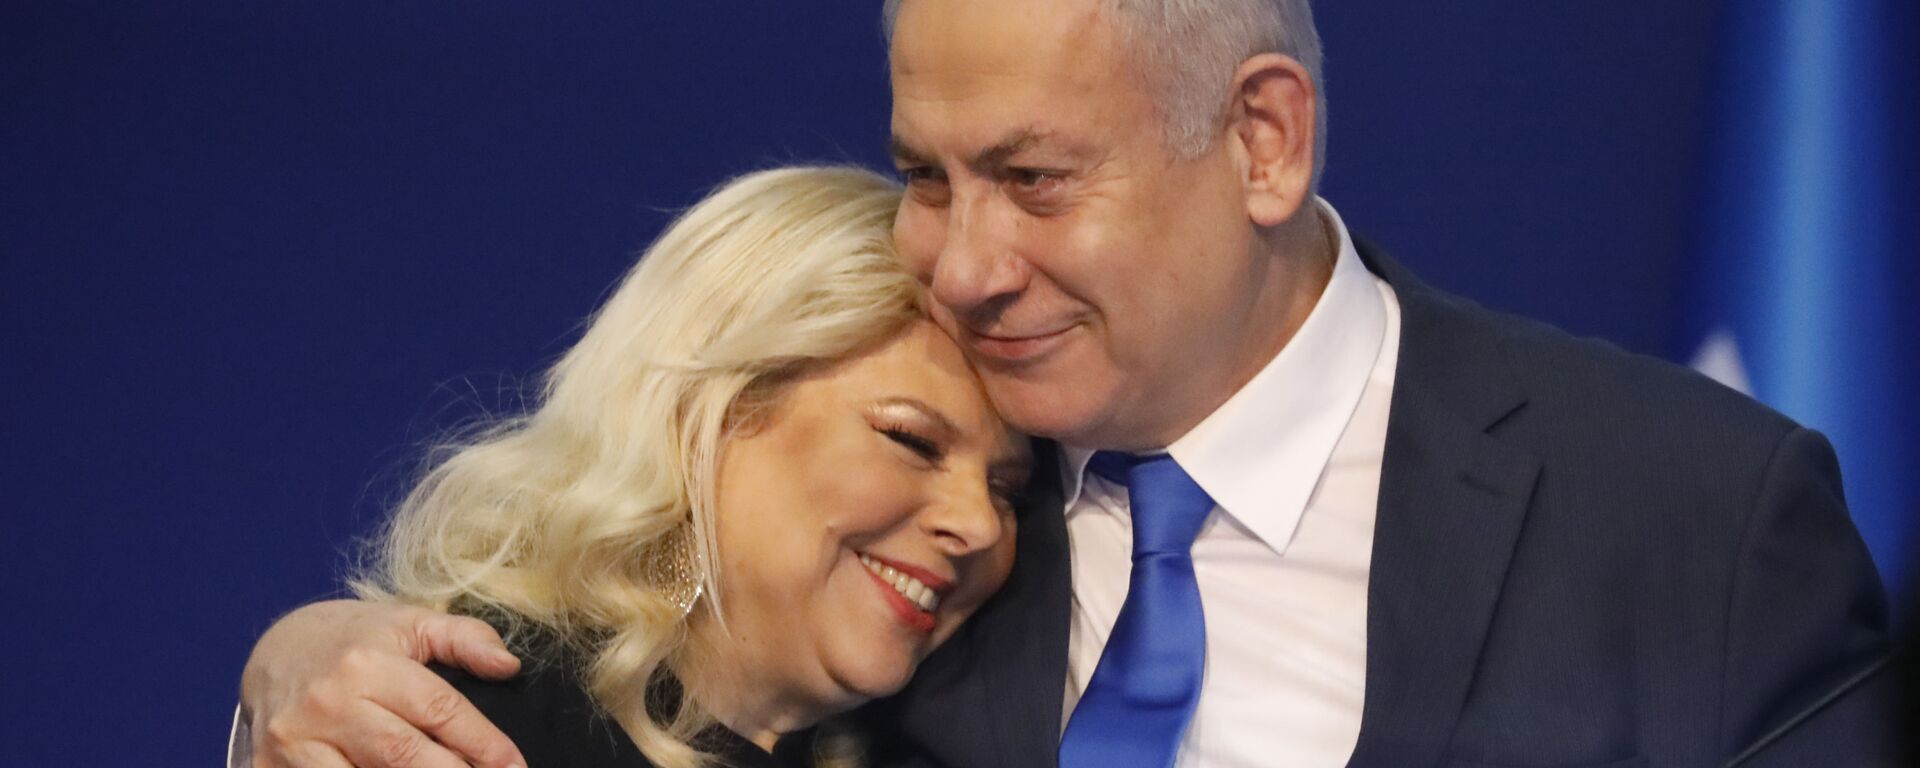 Benyamin Netanyahu ve eşi Sara Netanyahu - Sputnik Türkiye, 1920, 11.03.2021